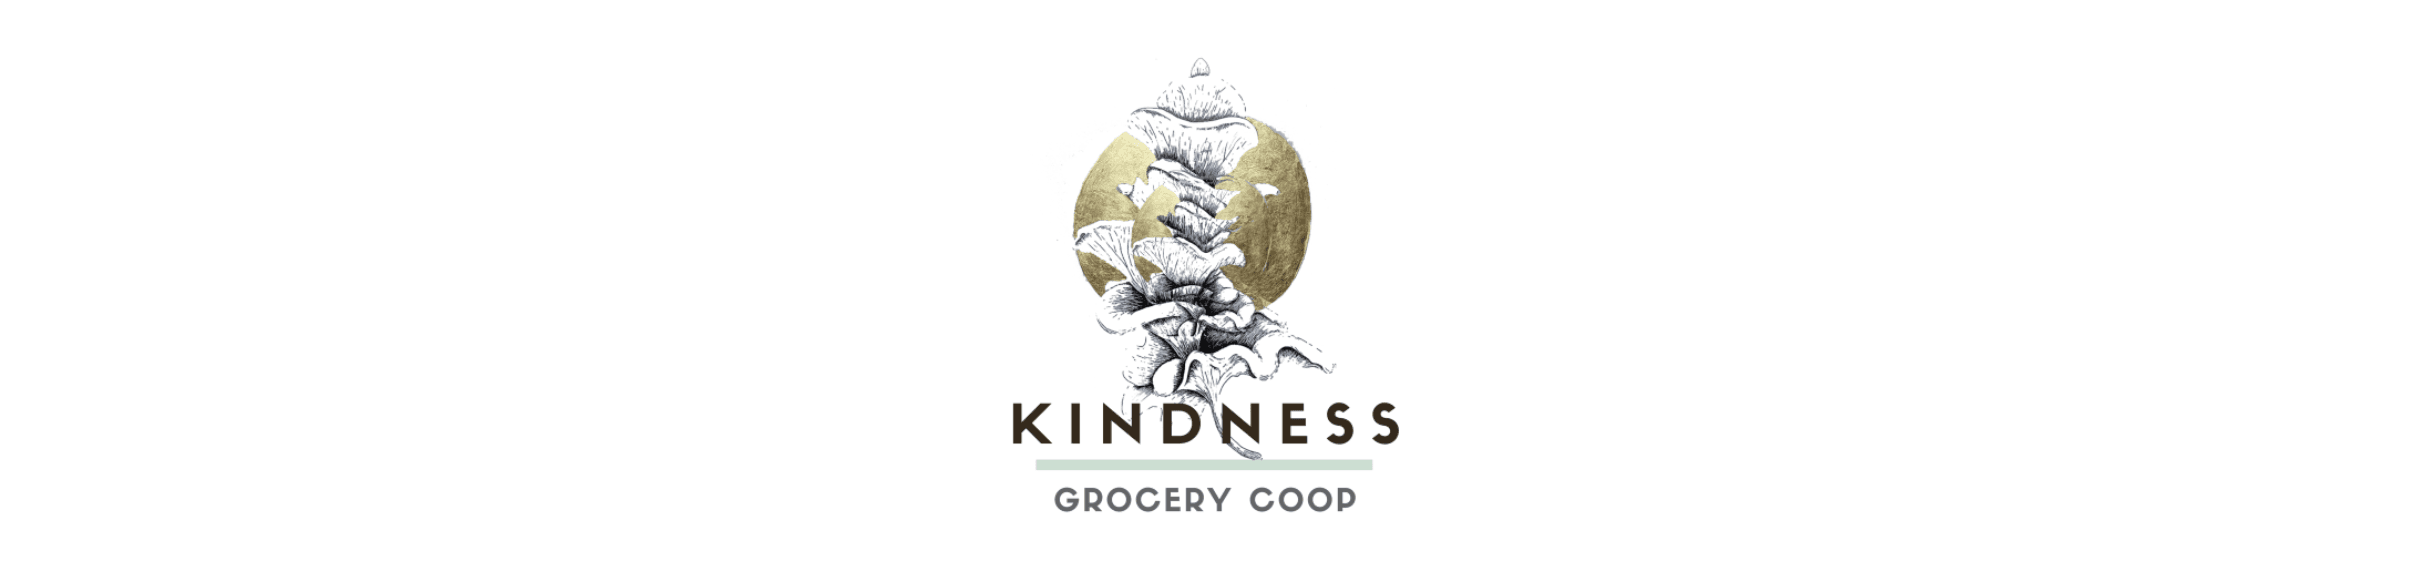 Kindnessgrocerycoop2021 橫幅